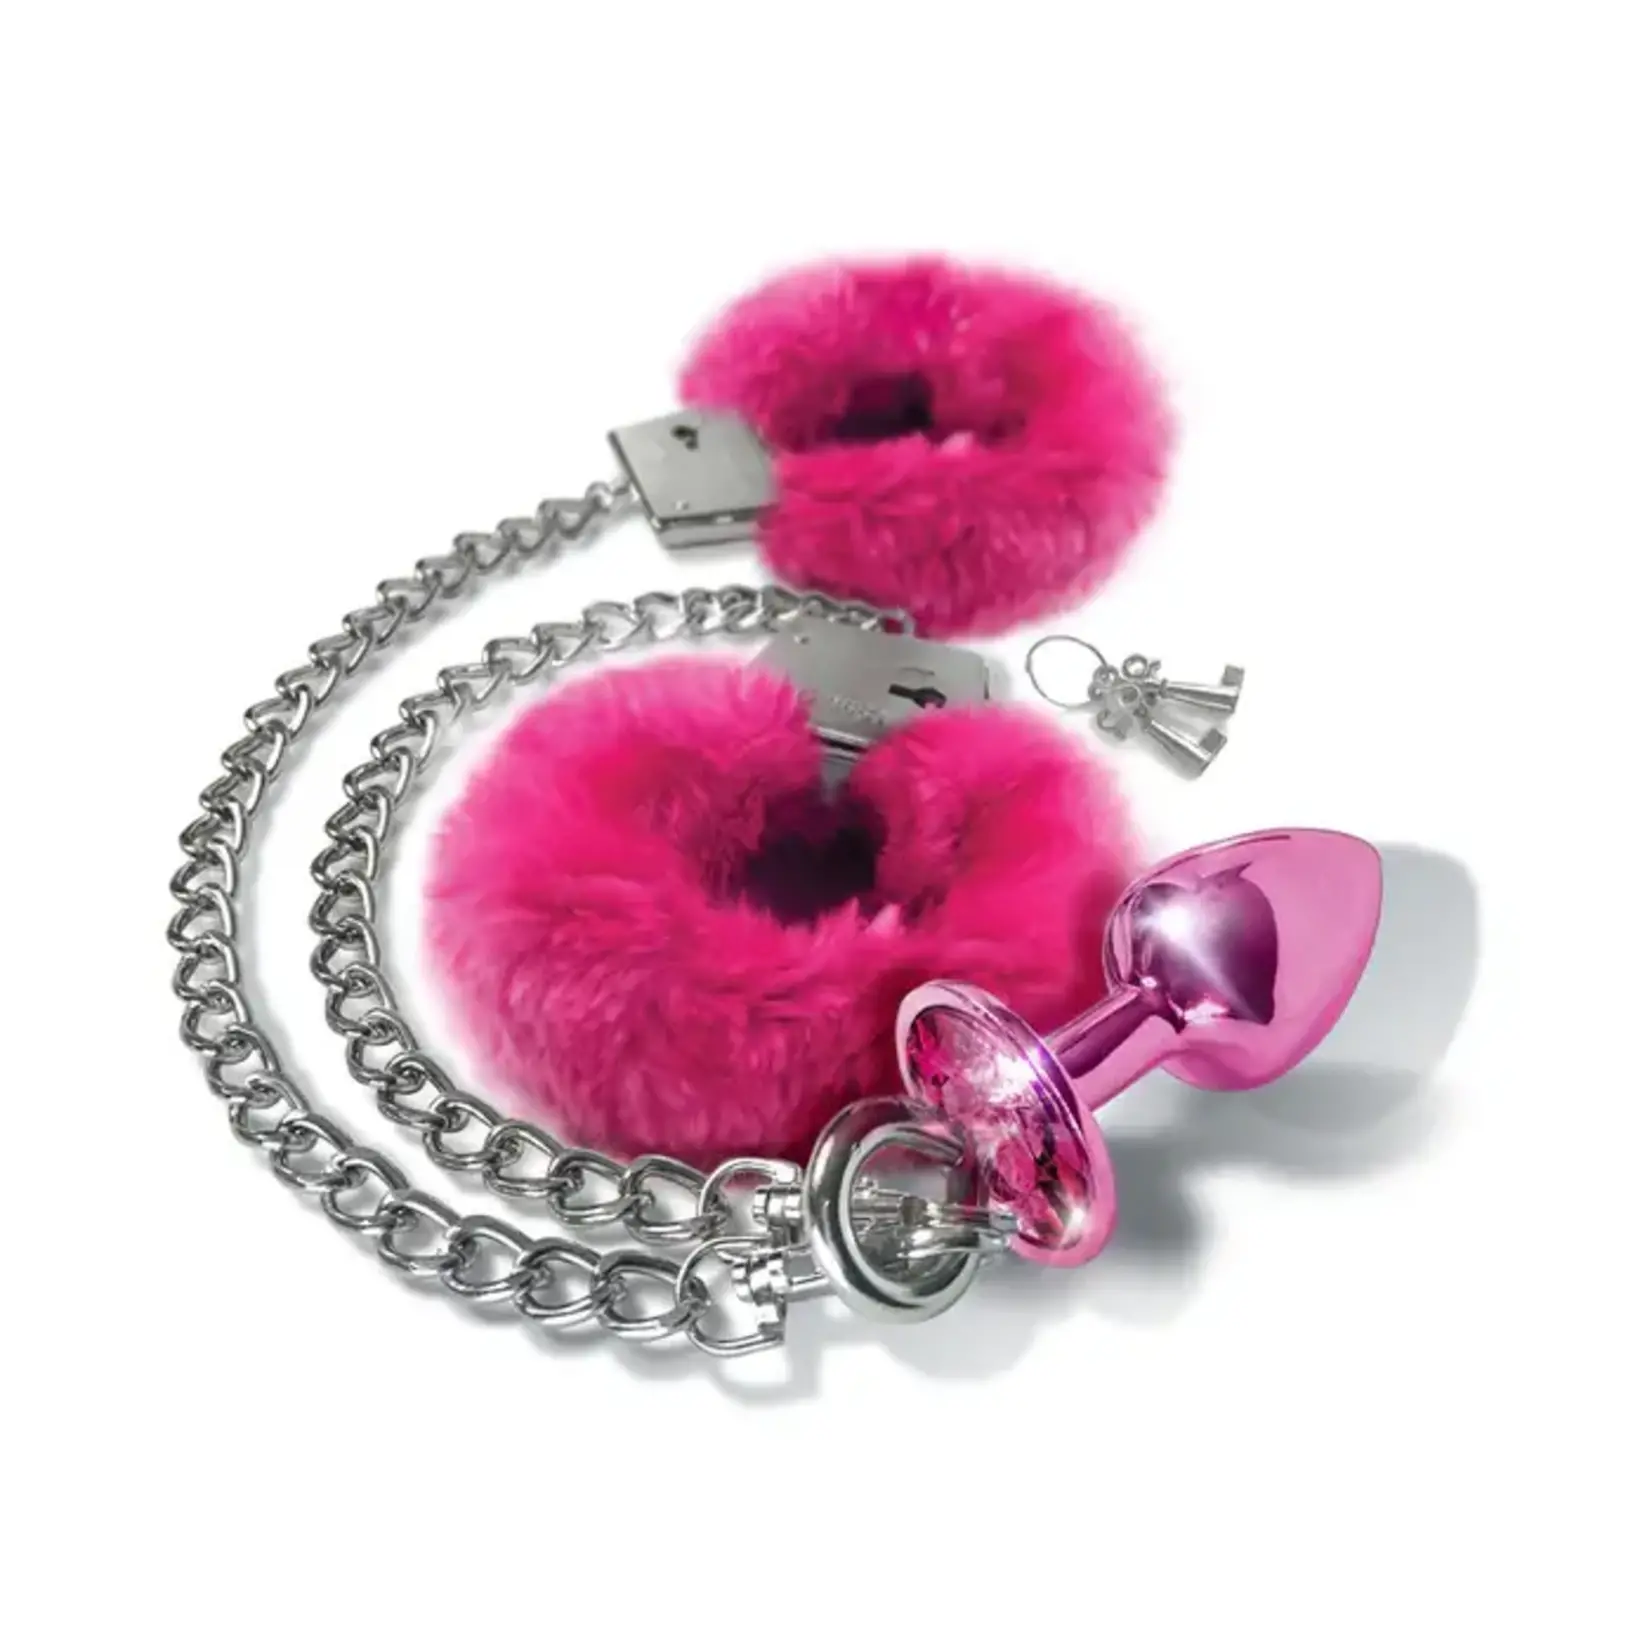 Nixie Nixie Metal Butt Plug w/Inlaid Jewel & Fur Cuff Set - Pink Metallic